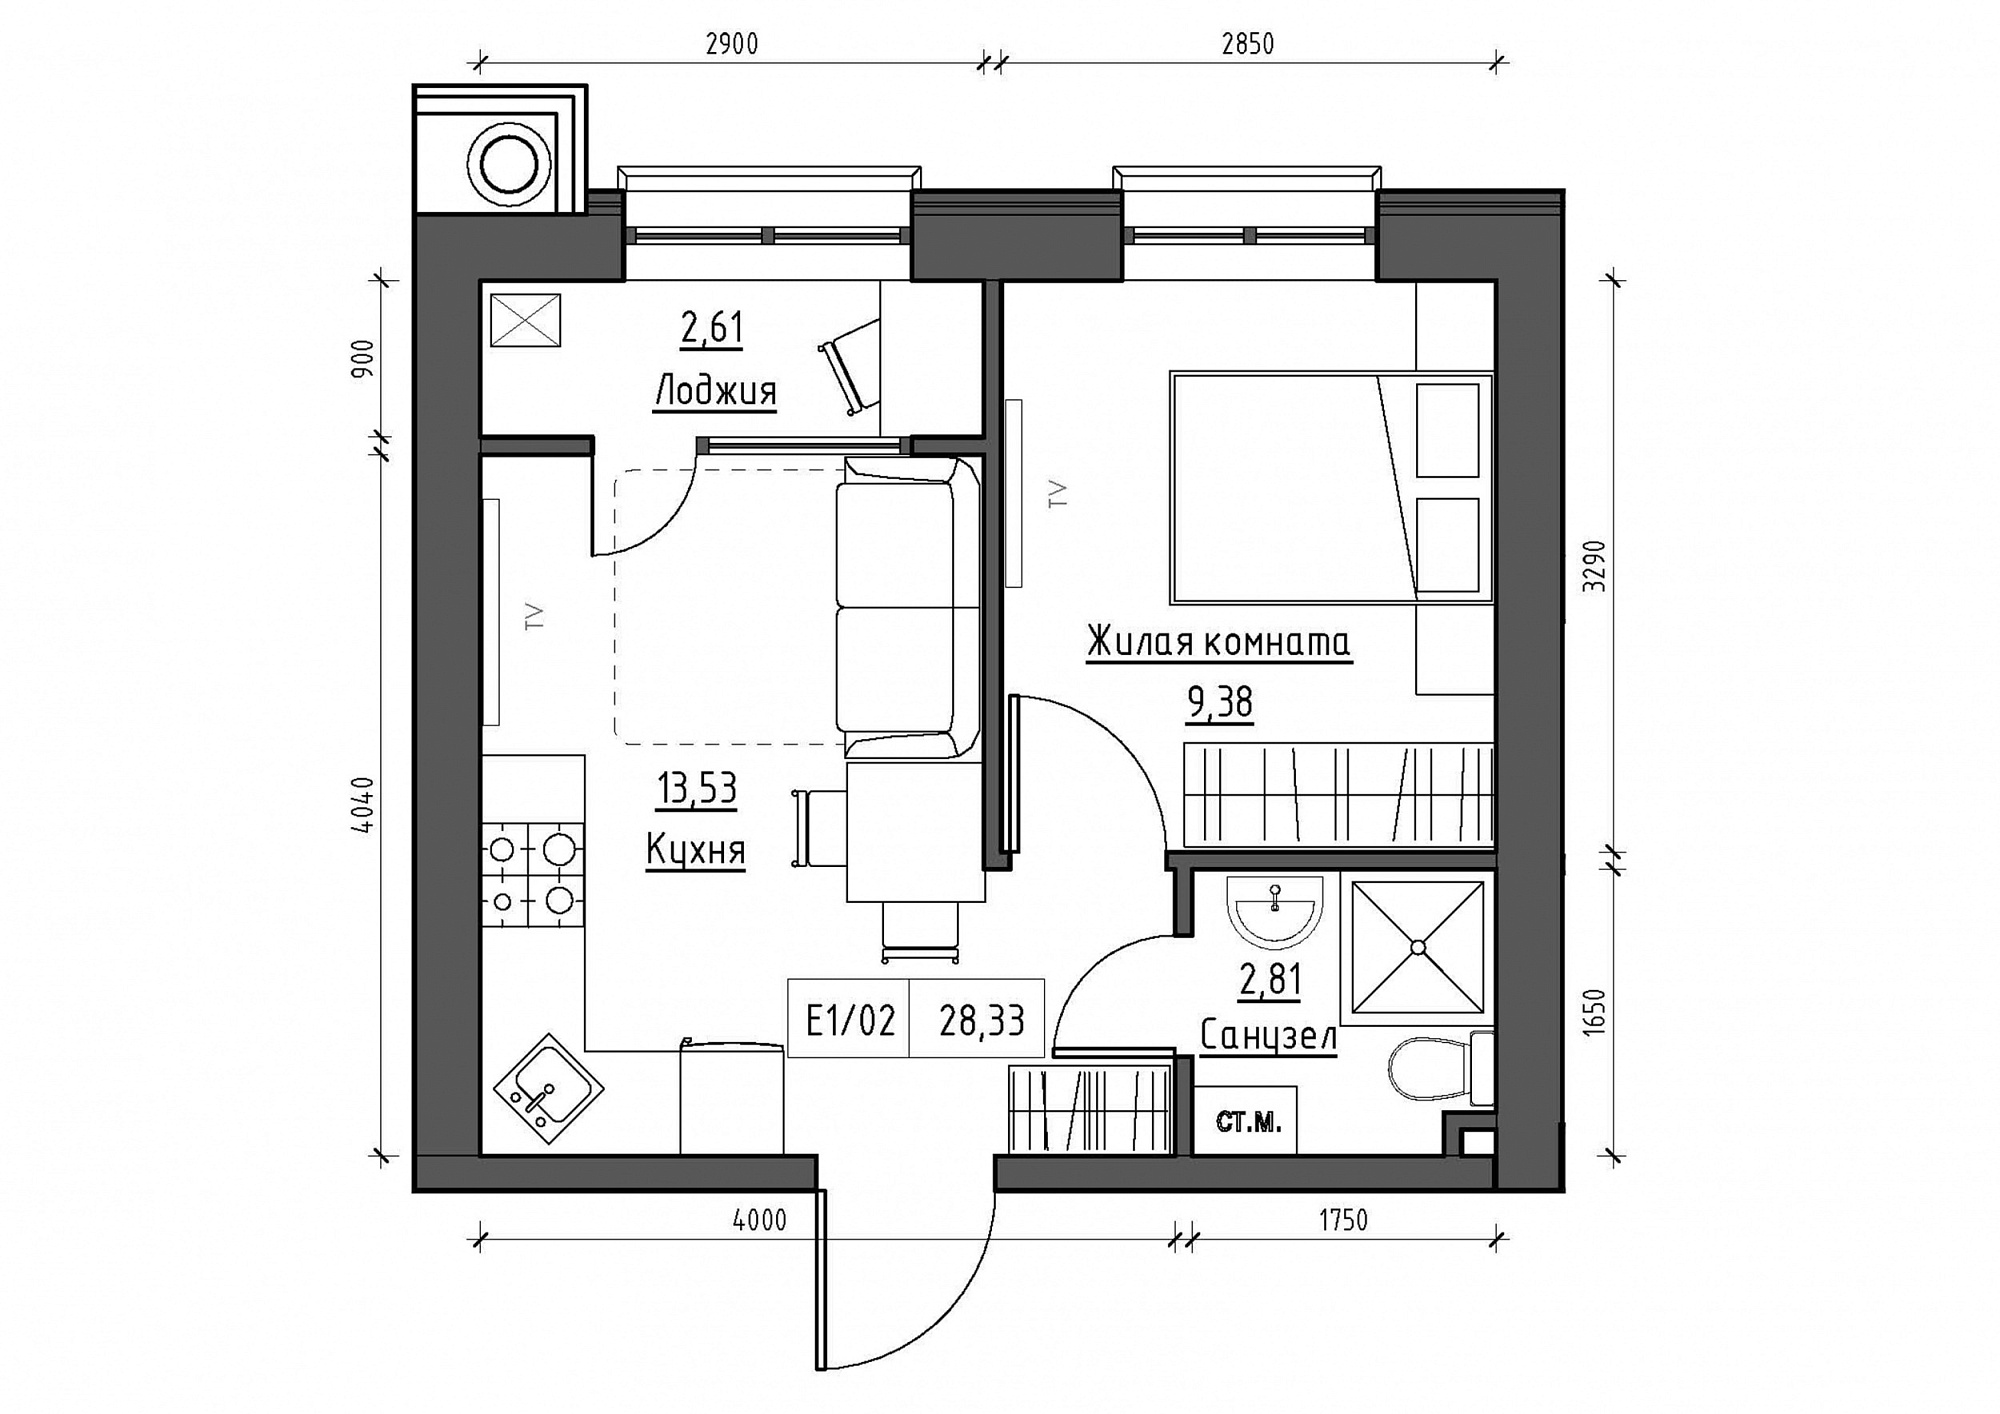 Планування 1-к квартира площею 28.33м2, KS-011-03/0015.